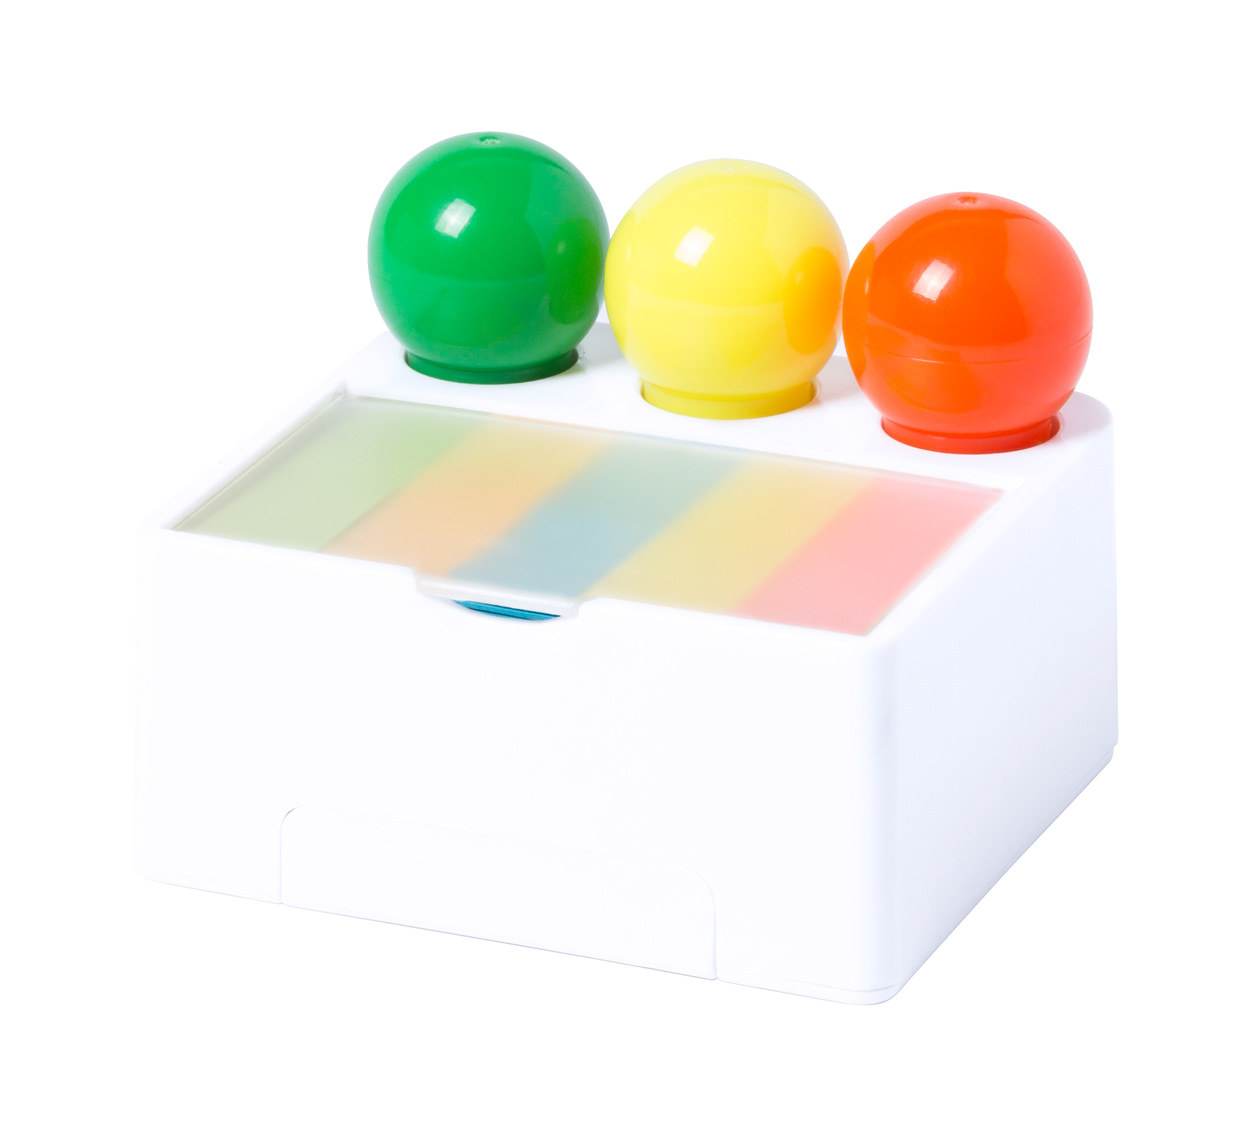 Promo  Bolings, Set 3 markera različitih boja na plastičnom stalku s ugrađenim držačem mobitela